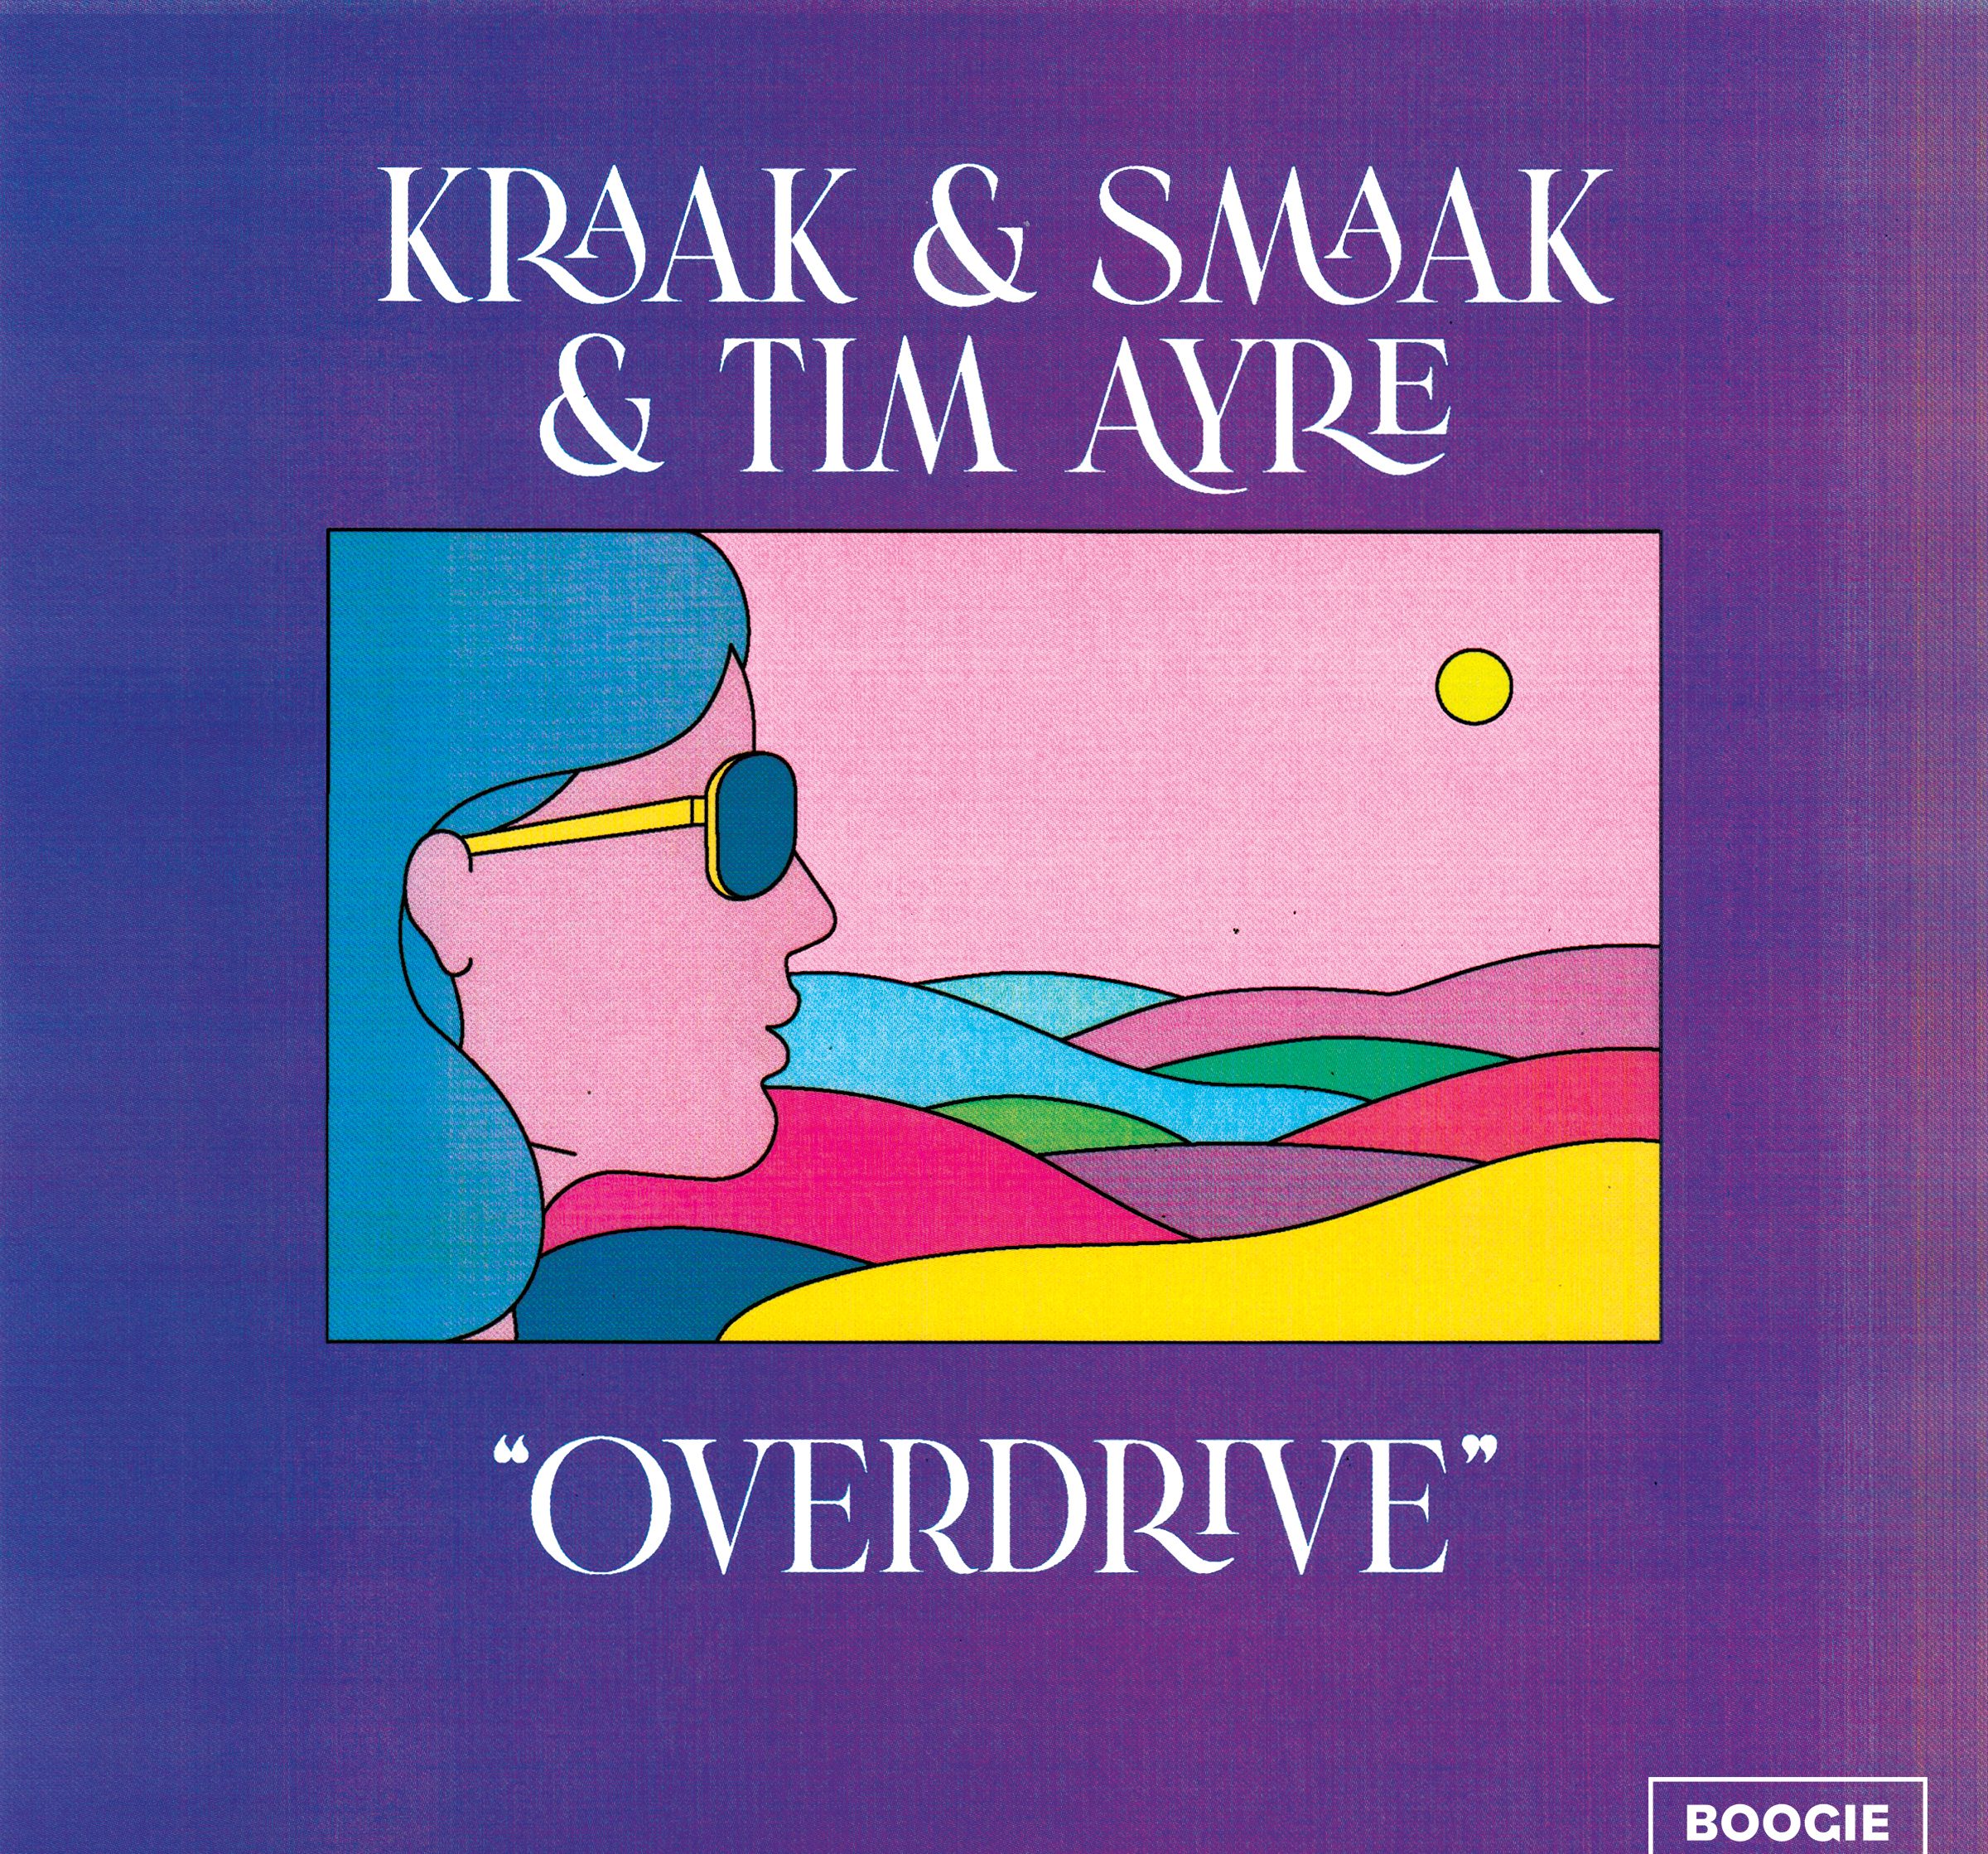 Kraak & Smaak estrenan «Overdrive» una puerta que da hacia el verano.